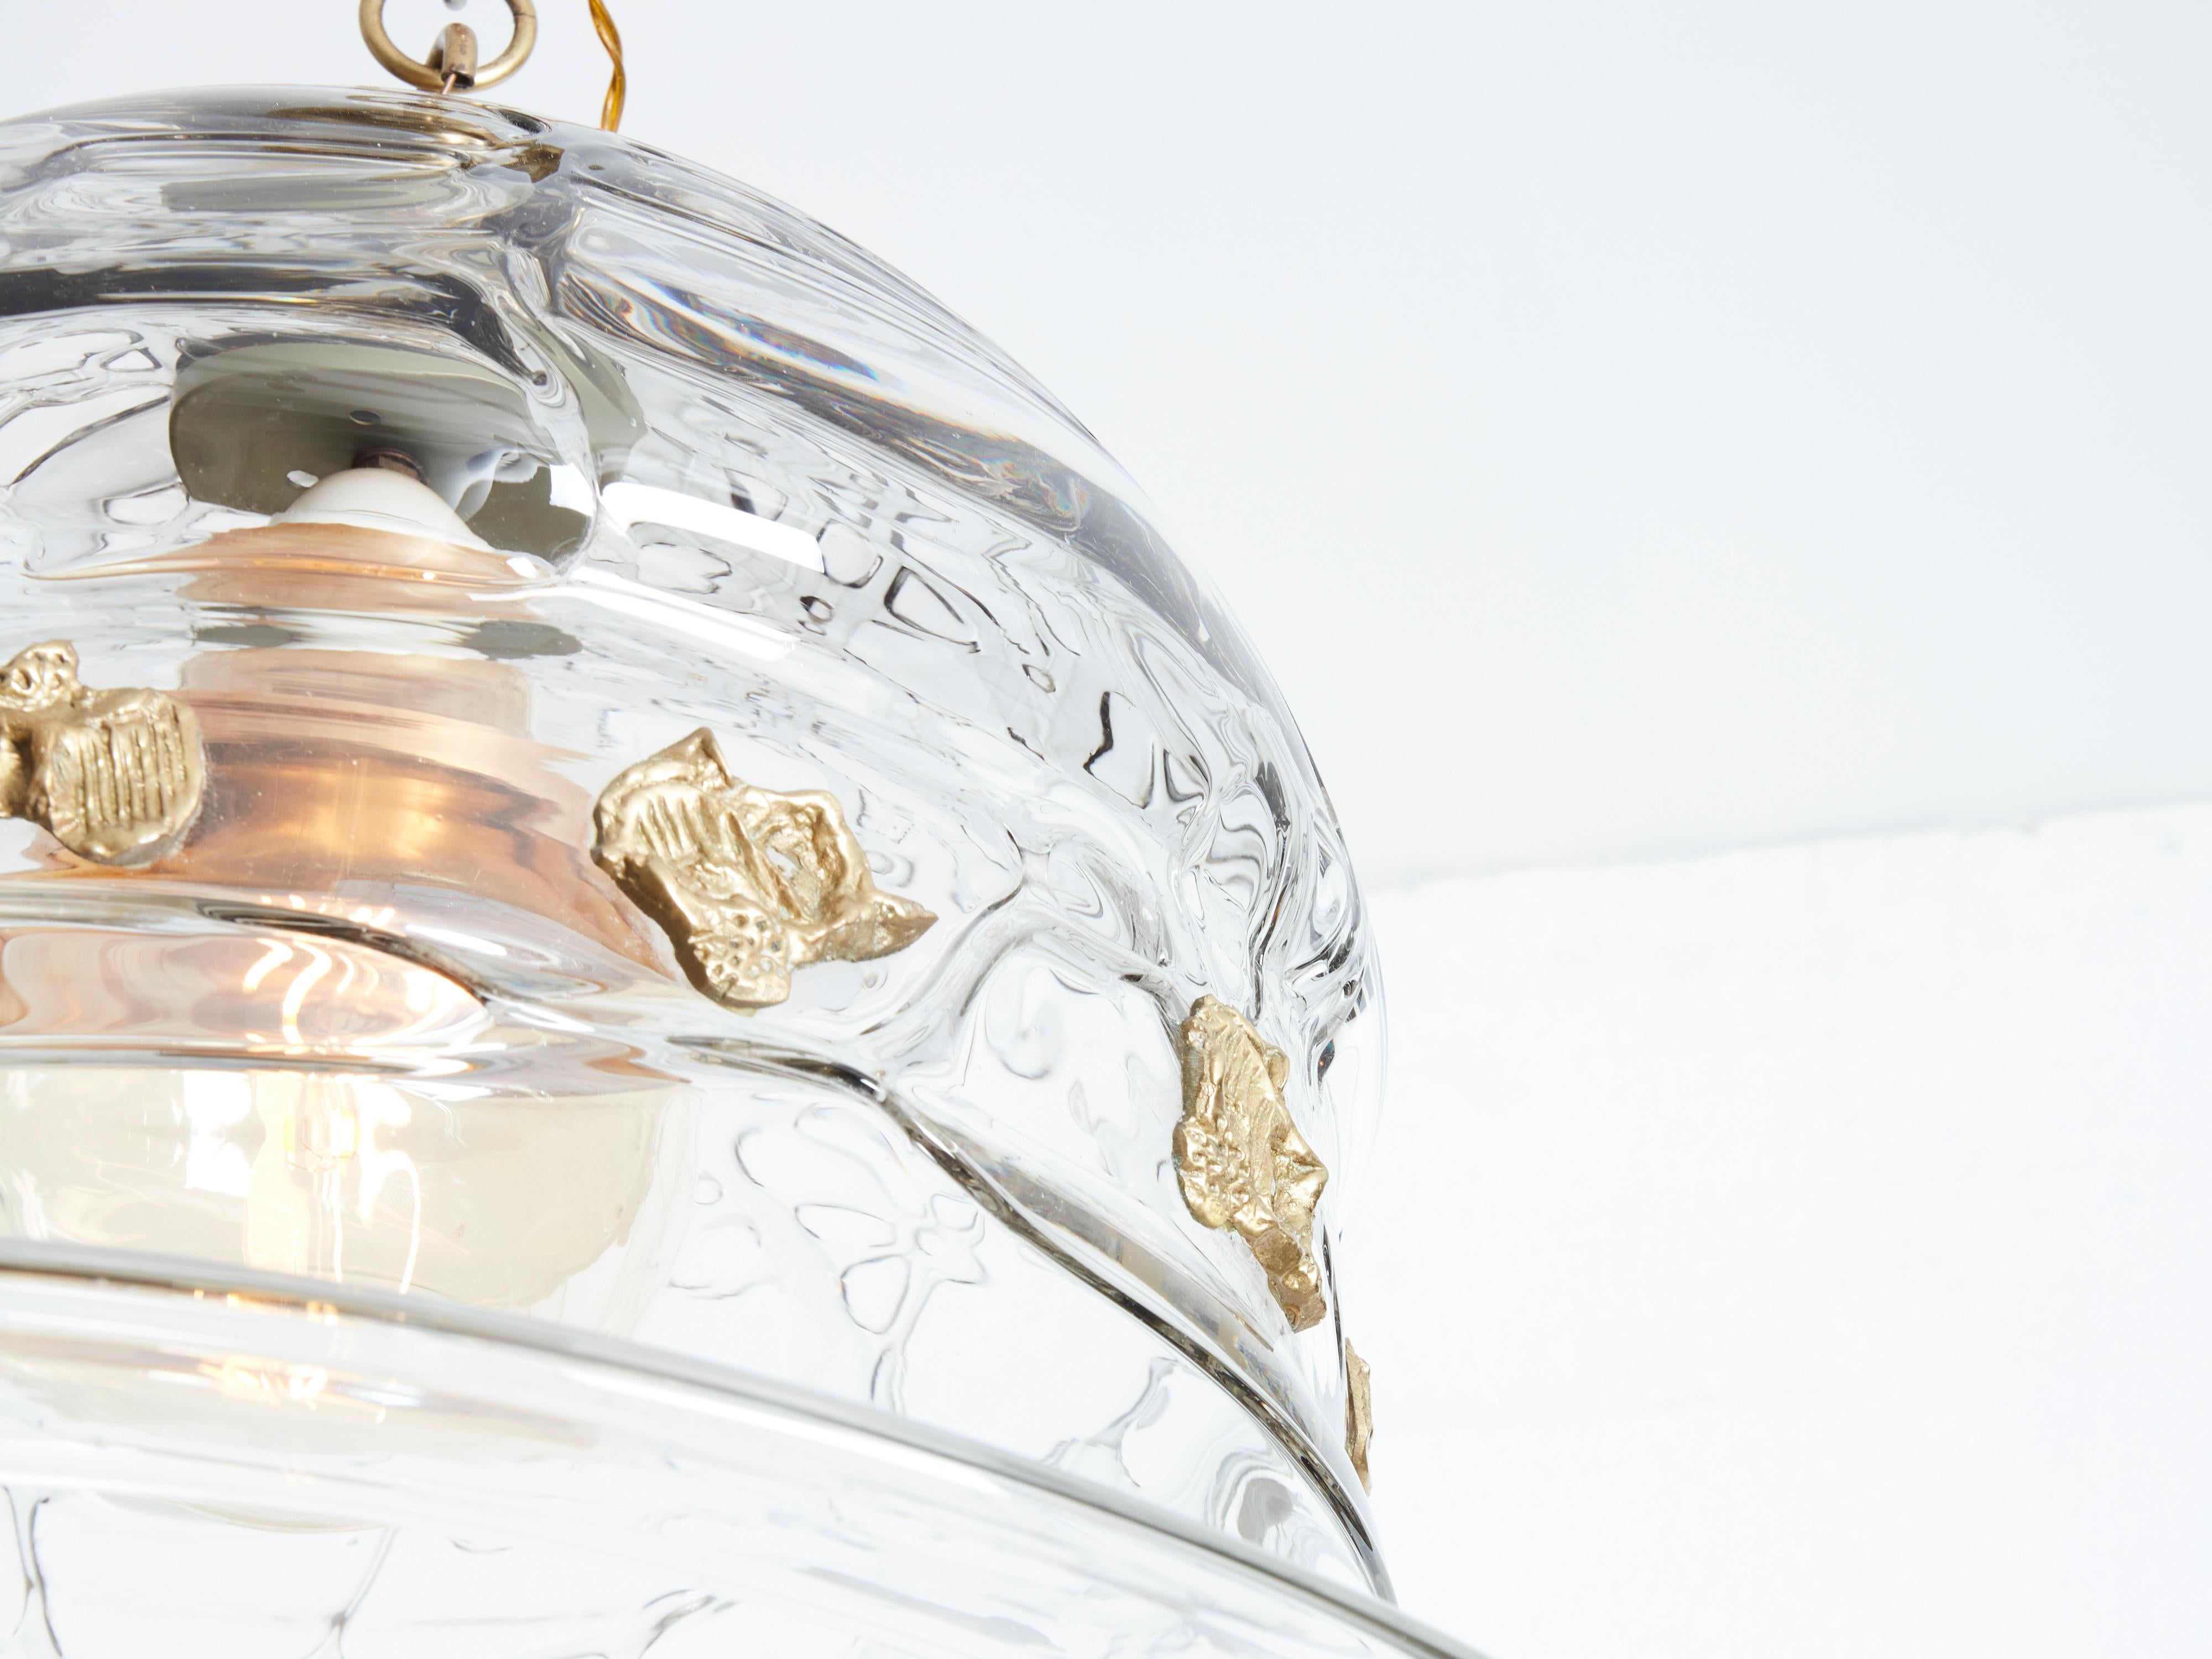 Ce lustre Art déco unique en forme de cloche, produit dans les années 1940 et attribué à Barovier&Toso, possède cette vision dans ses magnifiques ondulations cristallines et sa forme ludique et organique. Les accents de bronze magnifiquement